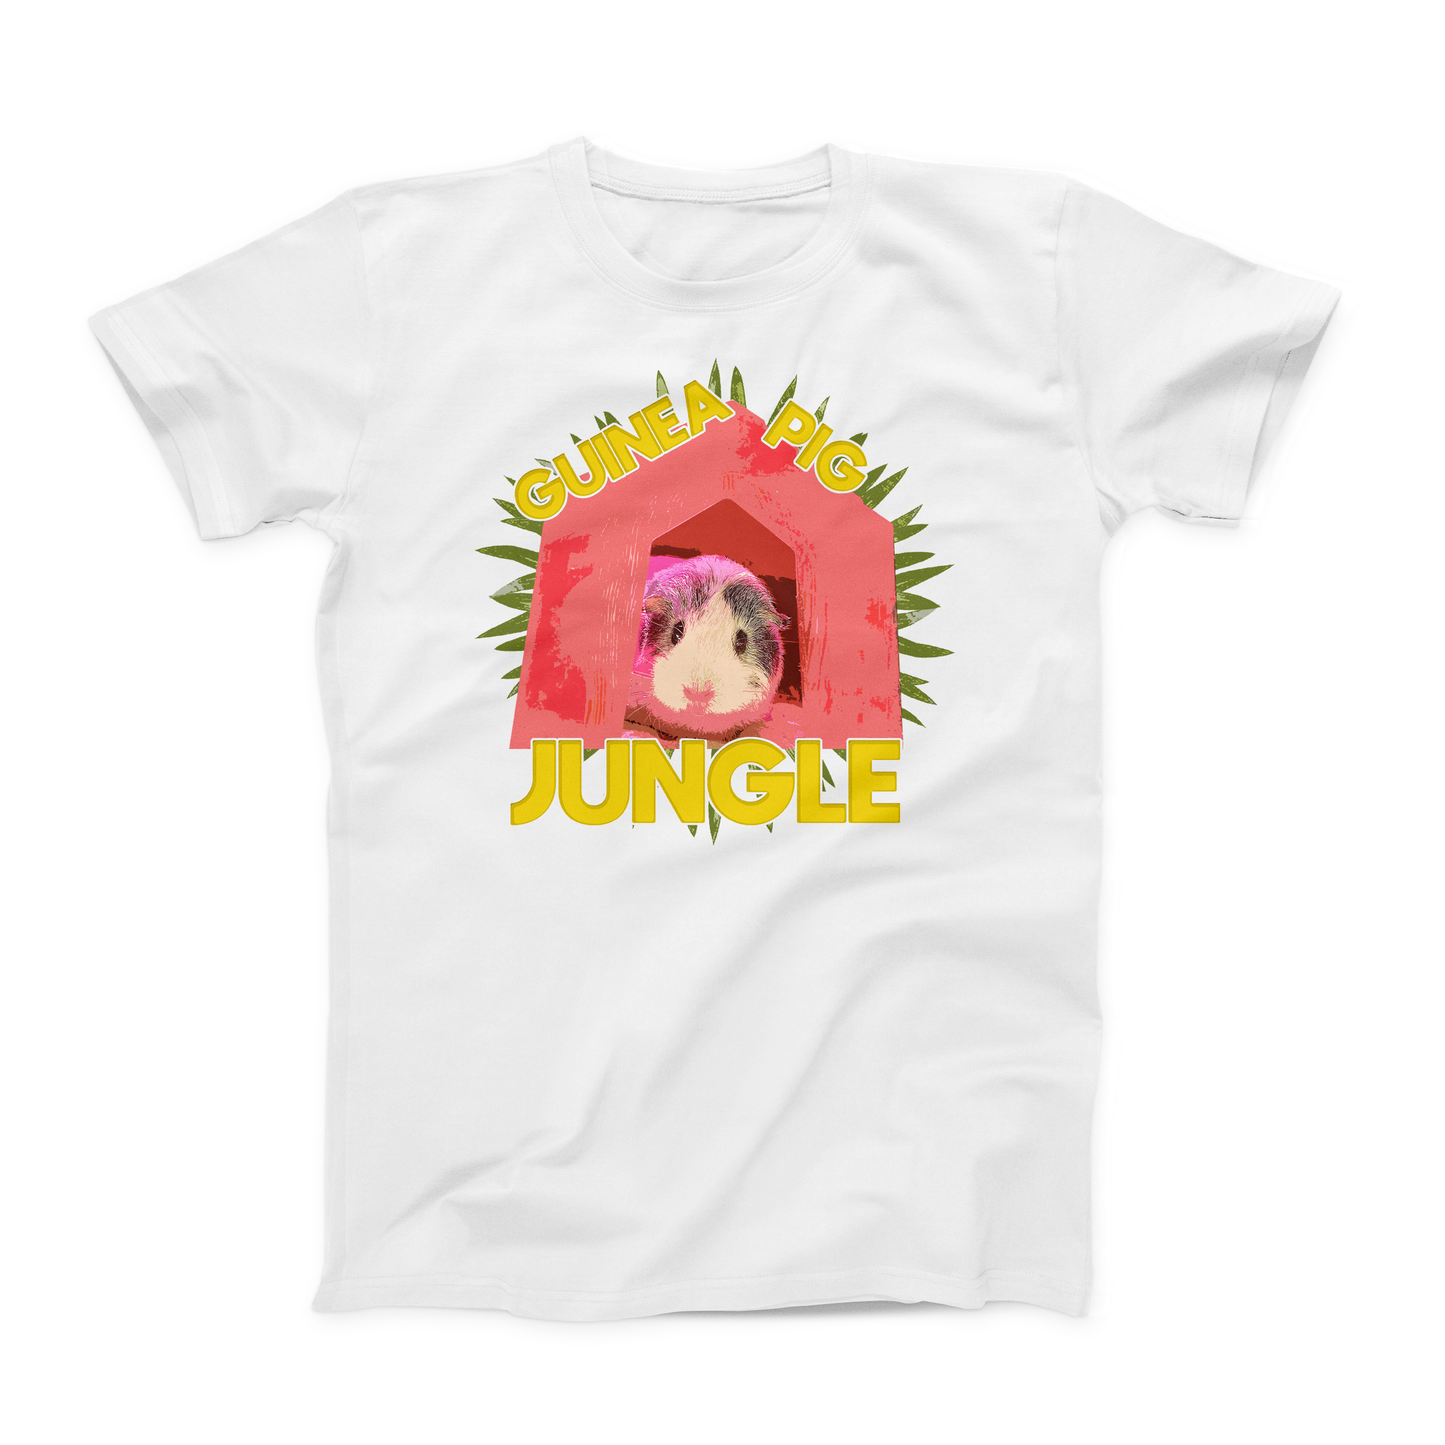 Disco Pig Youth T-Shirt : Guinea Pig Jungle Shirt: